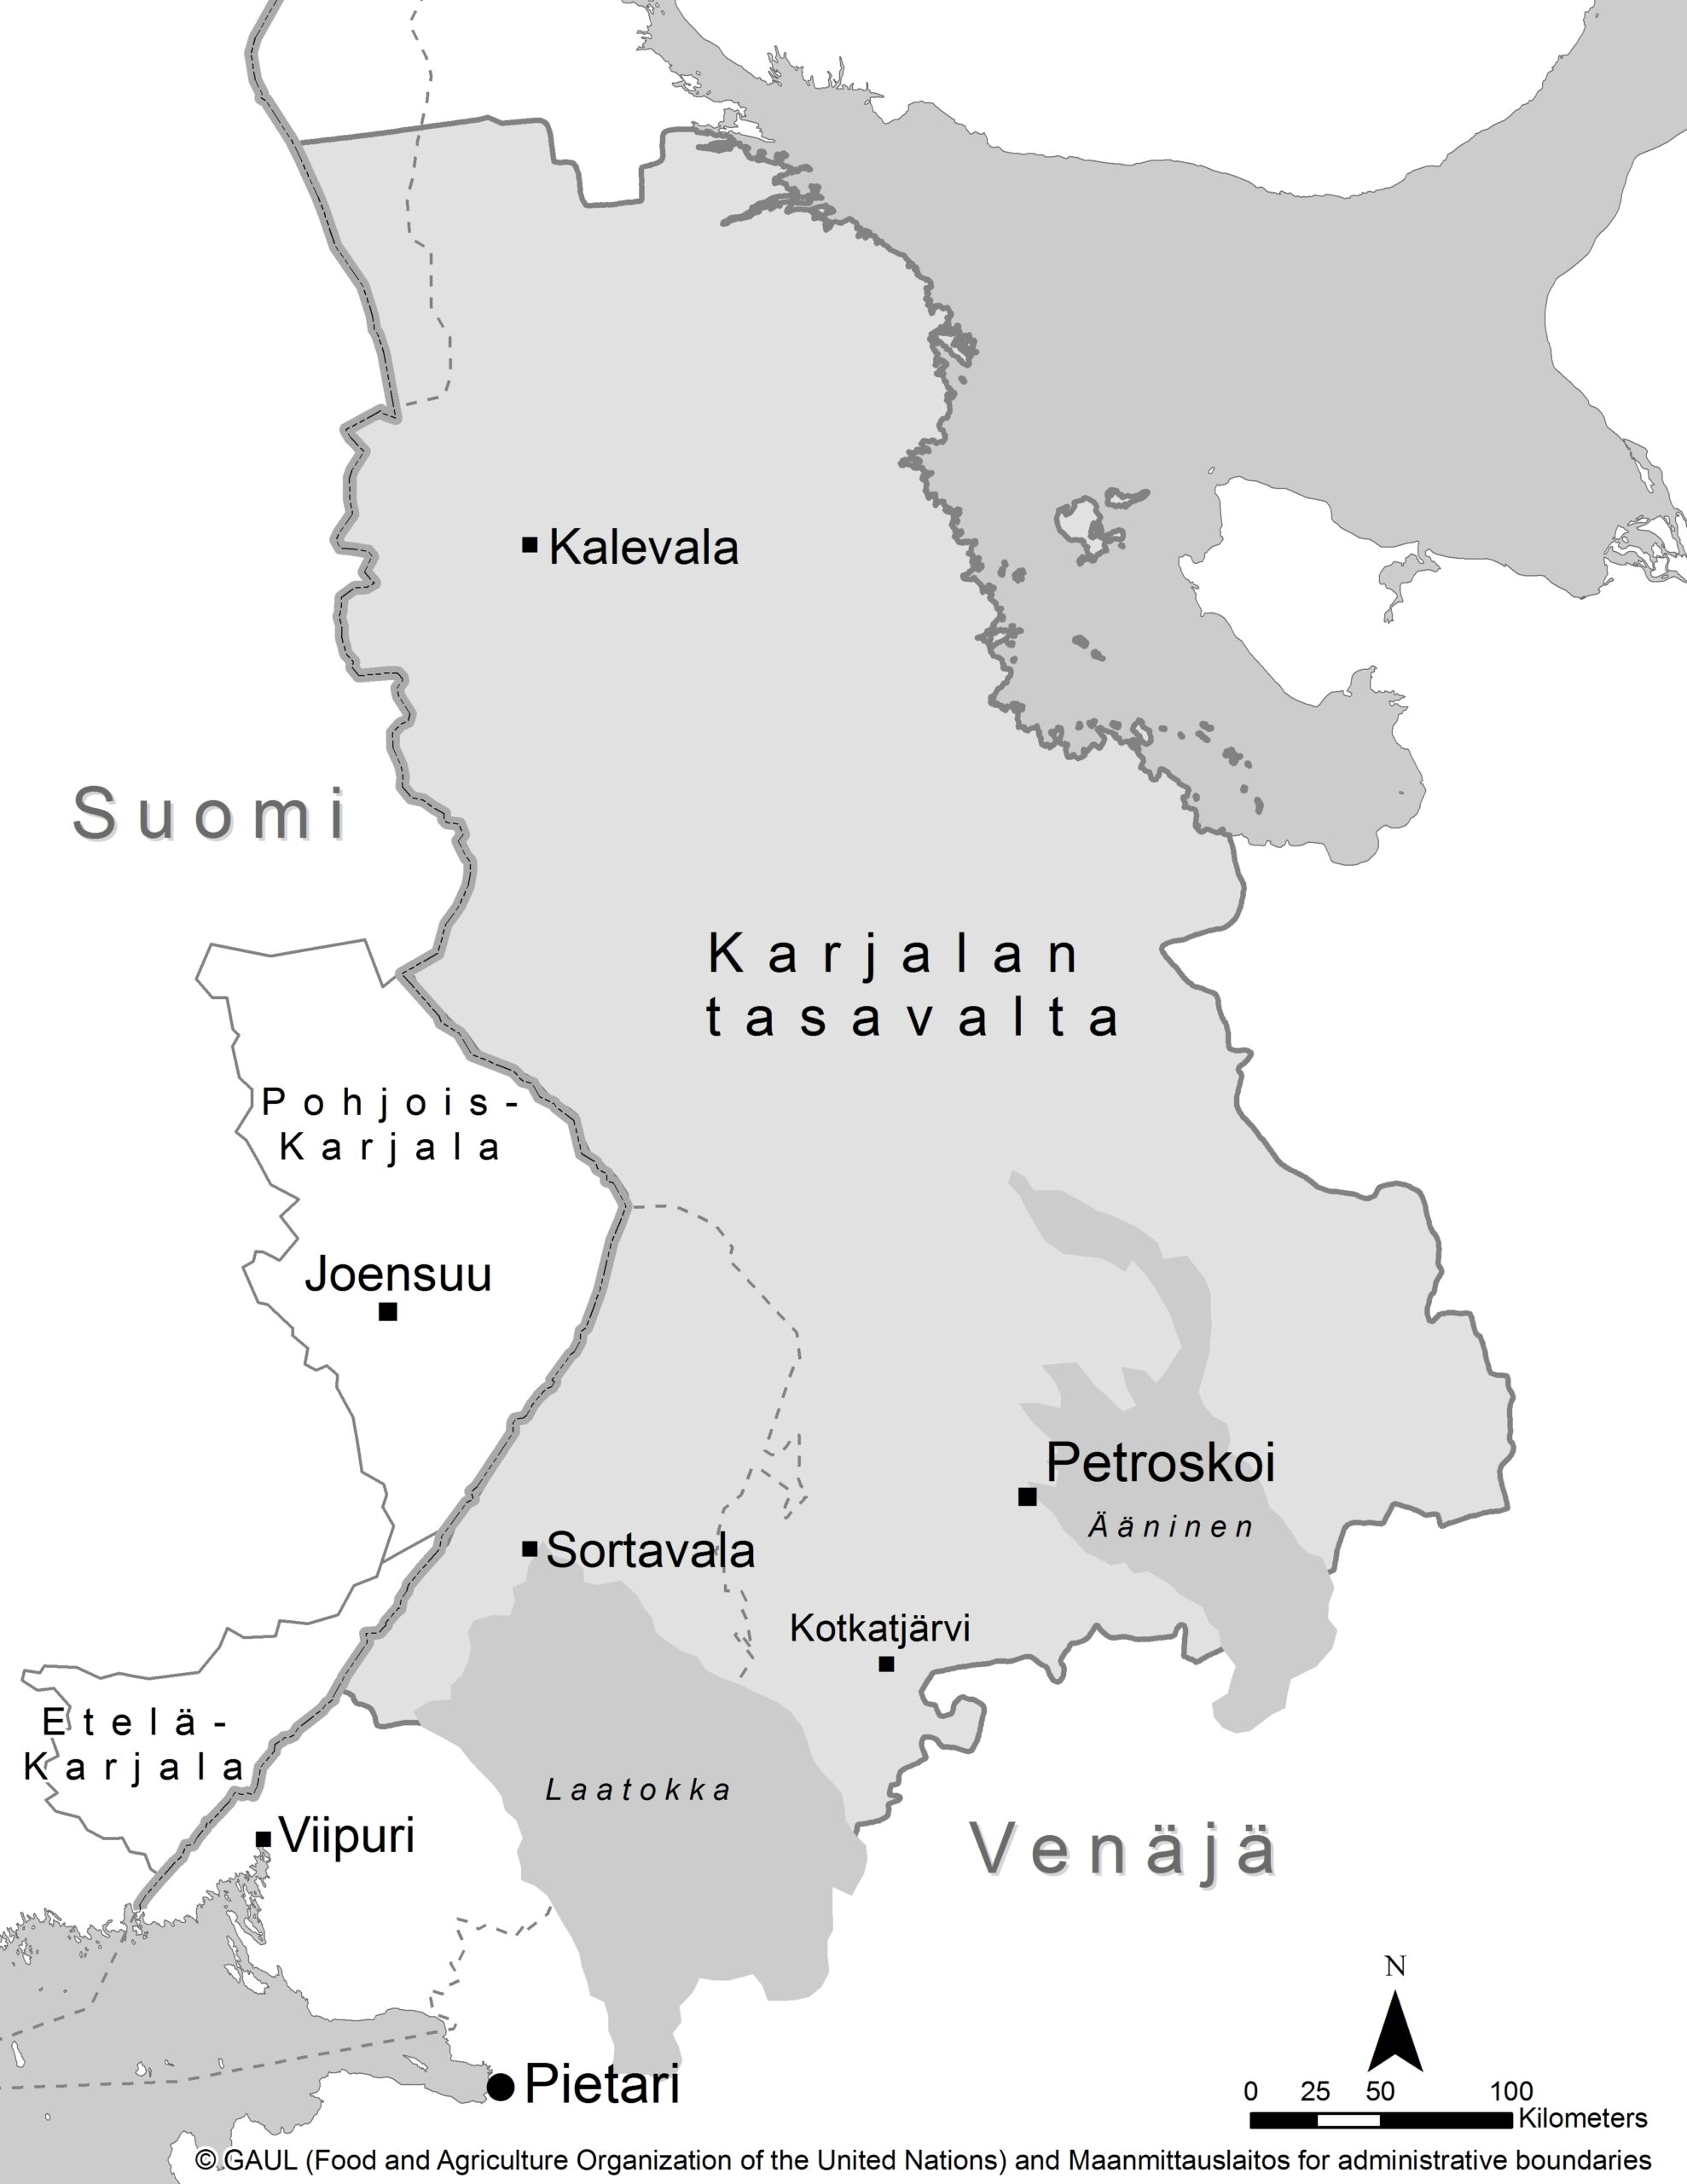 Image:  Karjalankieliset rajalla